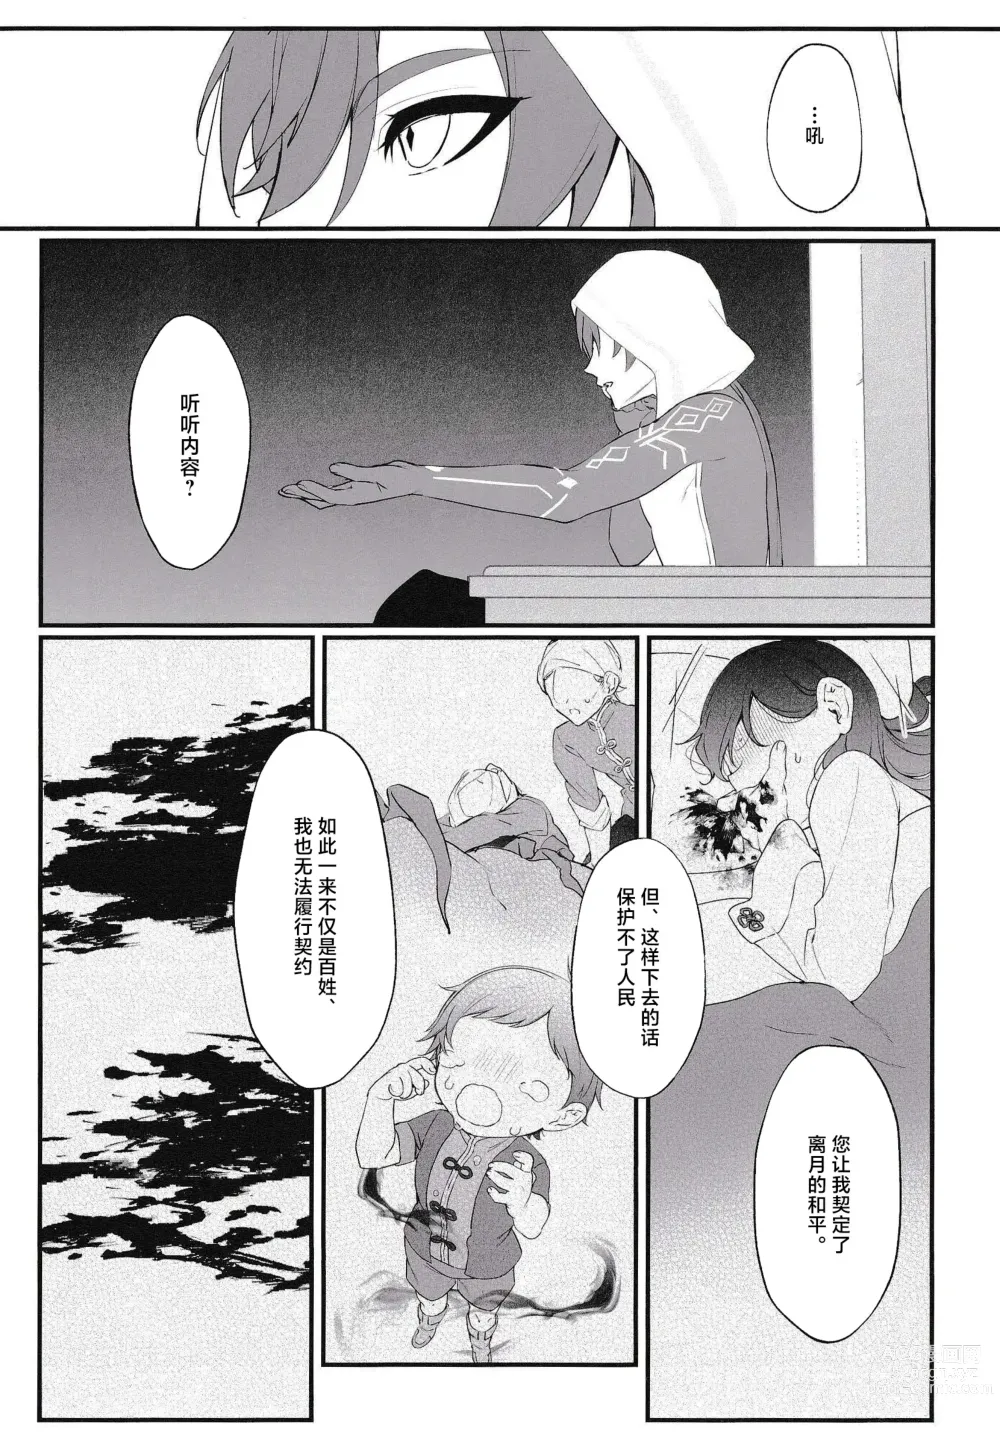 Page 10 of doujinshi Mugen no Sentaku